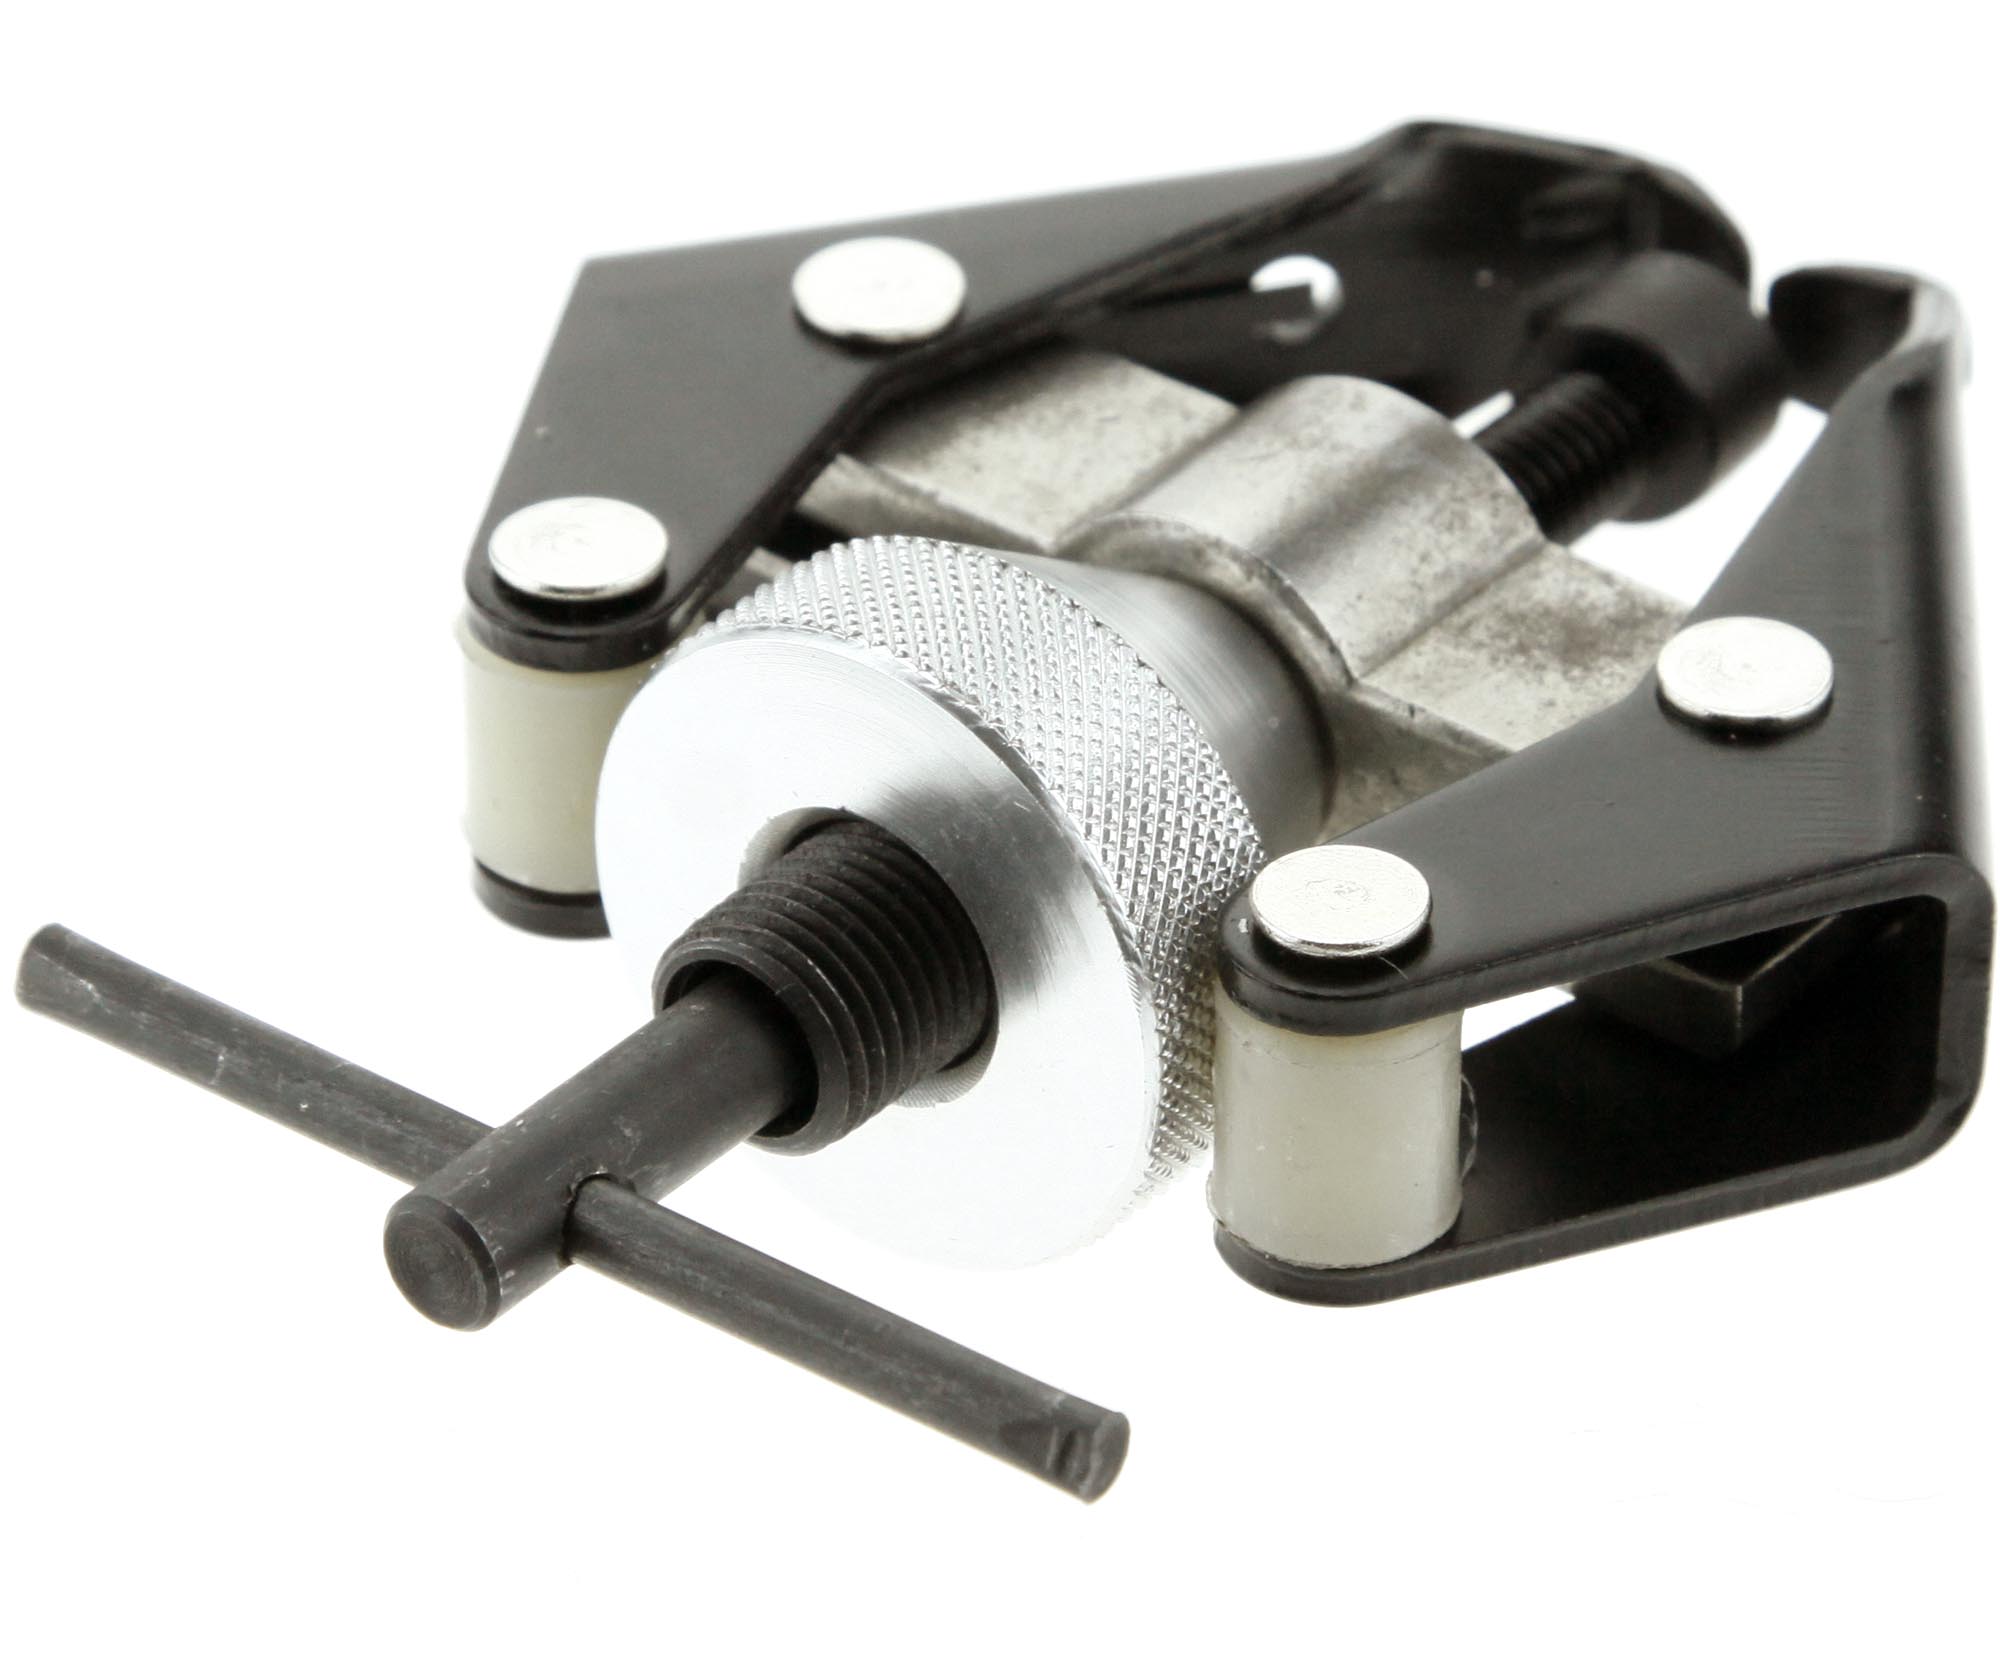 Battery Terminal Wiper Arm Remover Puller 6 28mm Repair Tool | eBay